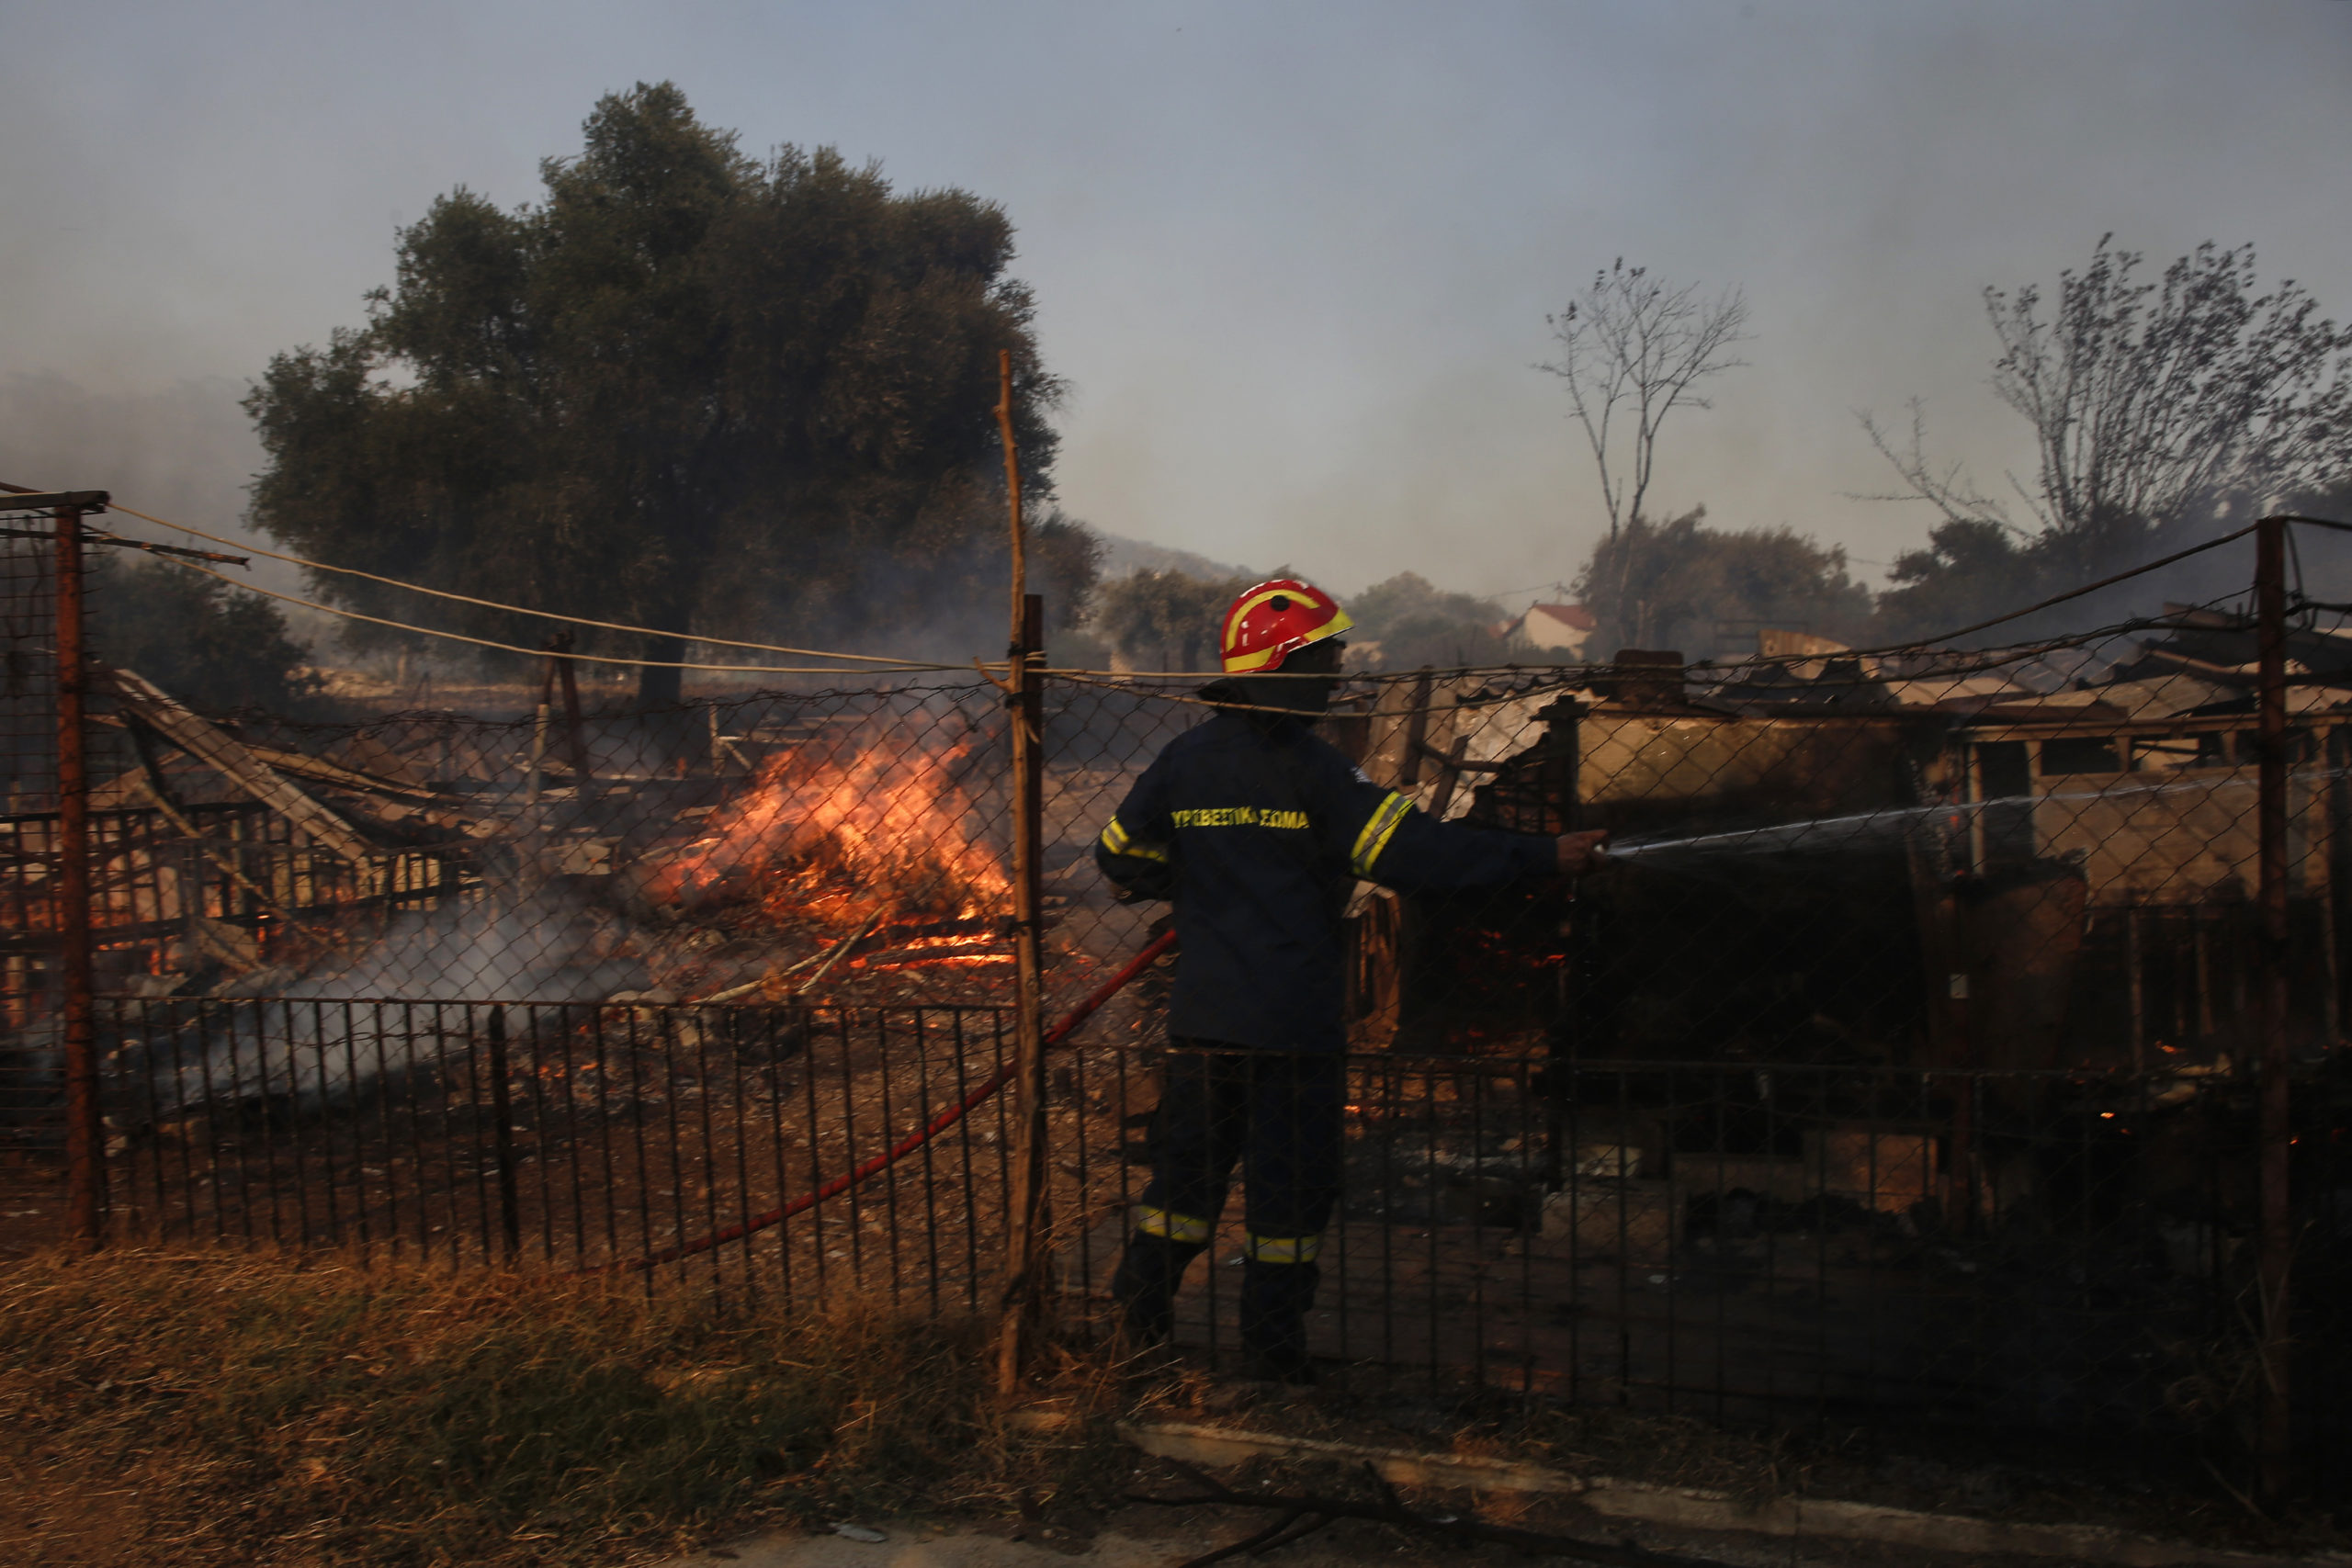 Δήμος Σαρωνικού: Ειδική μέριμνα για όσους εγκατέλειψαν τα σπίτια τους από την πυρκαγιά